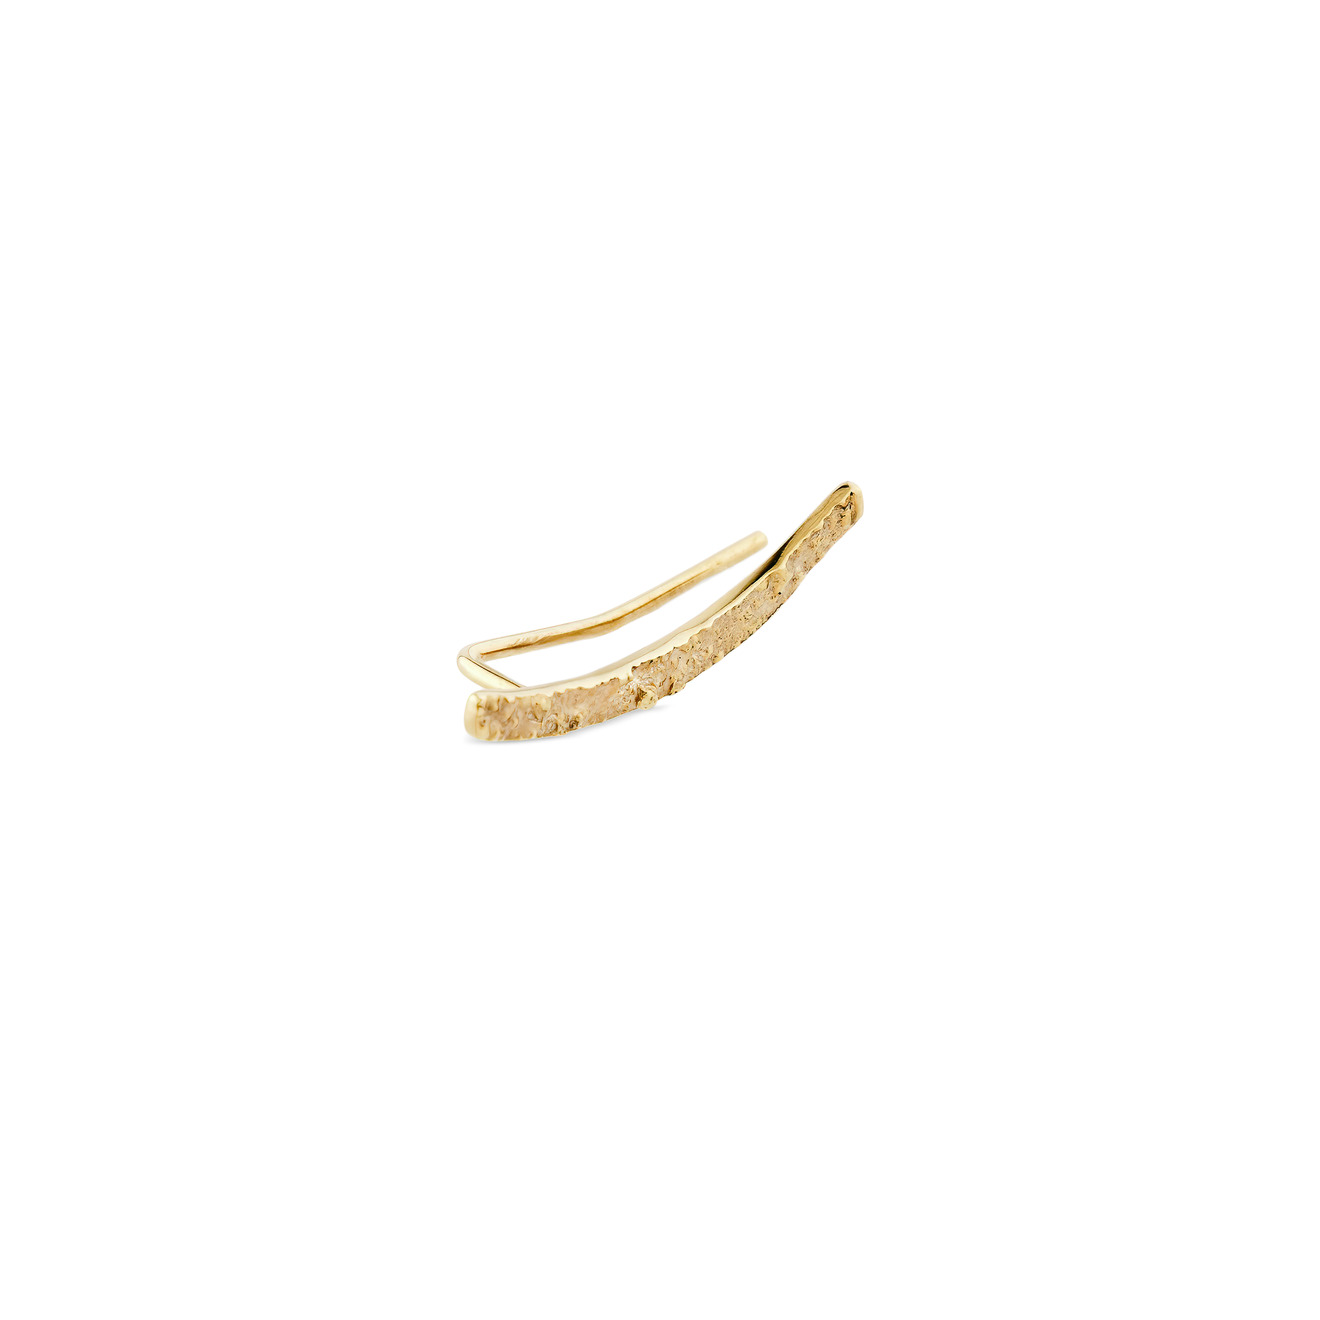 УРА jewelry Позолоченный клаймбер из серебра на левое ухо ms marble позолоченный клаймбер змея из серебра movement на левое ухо